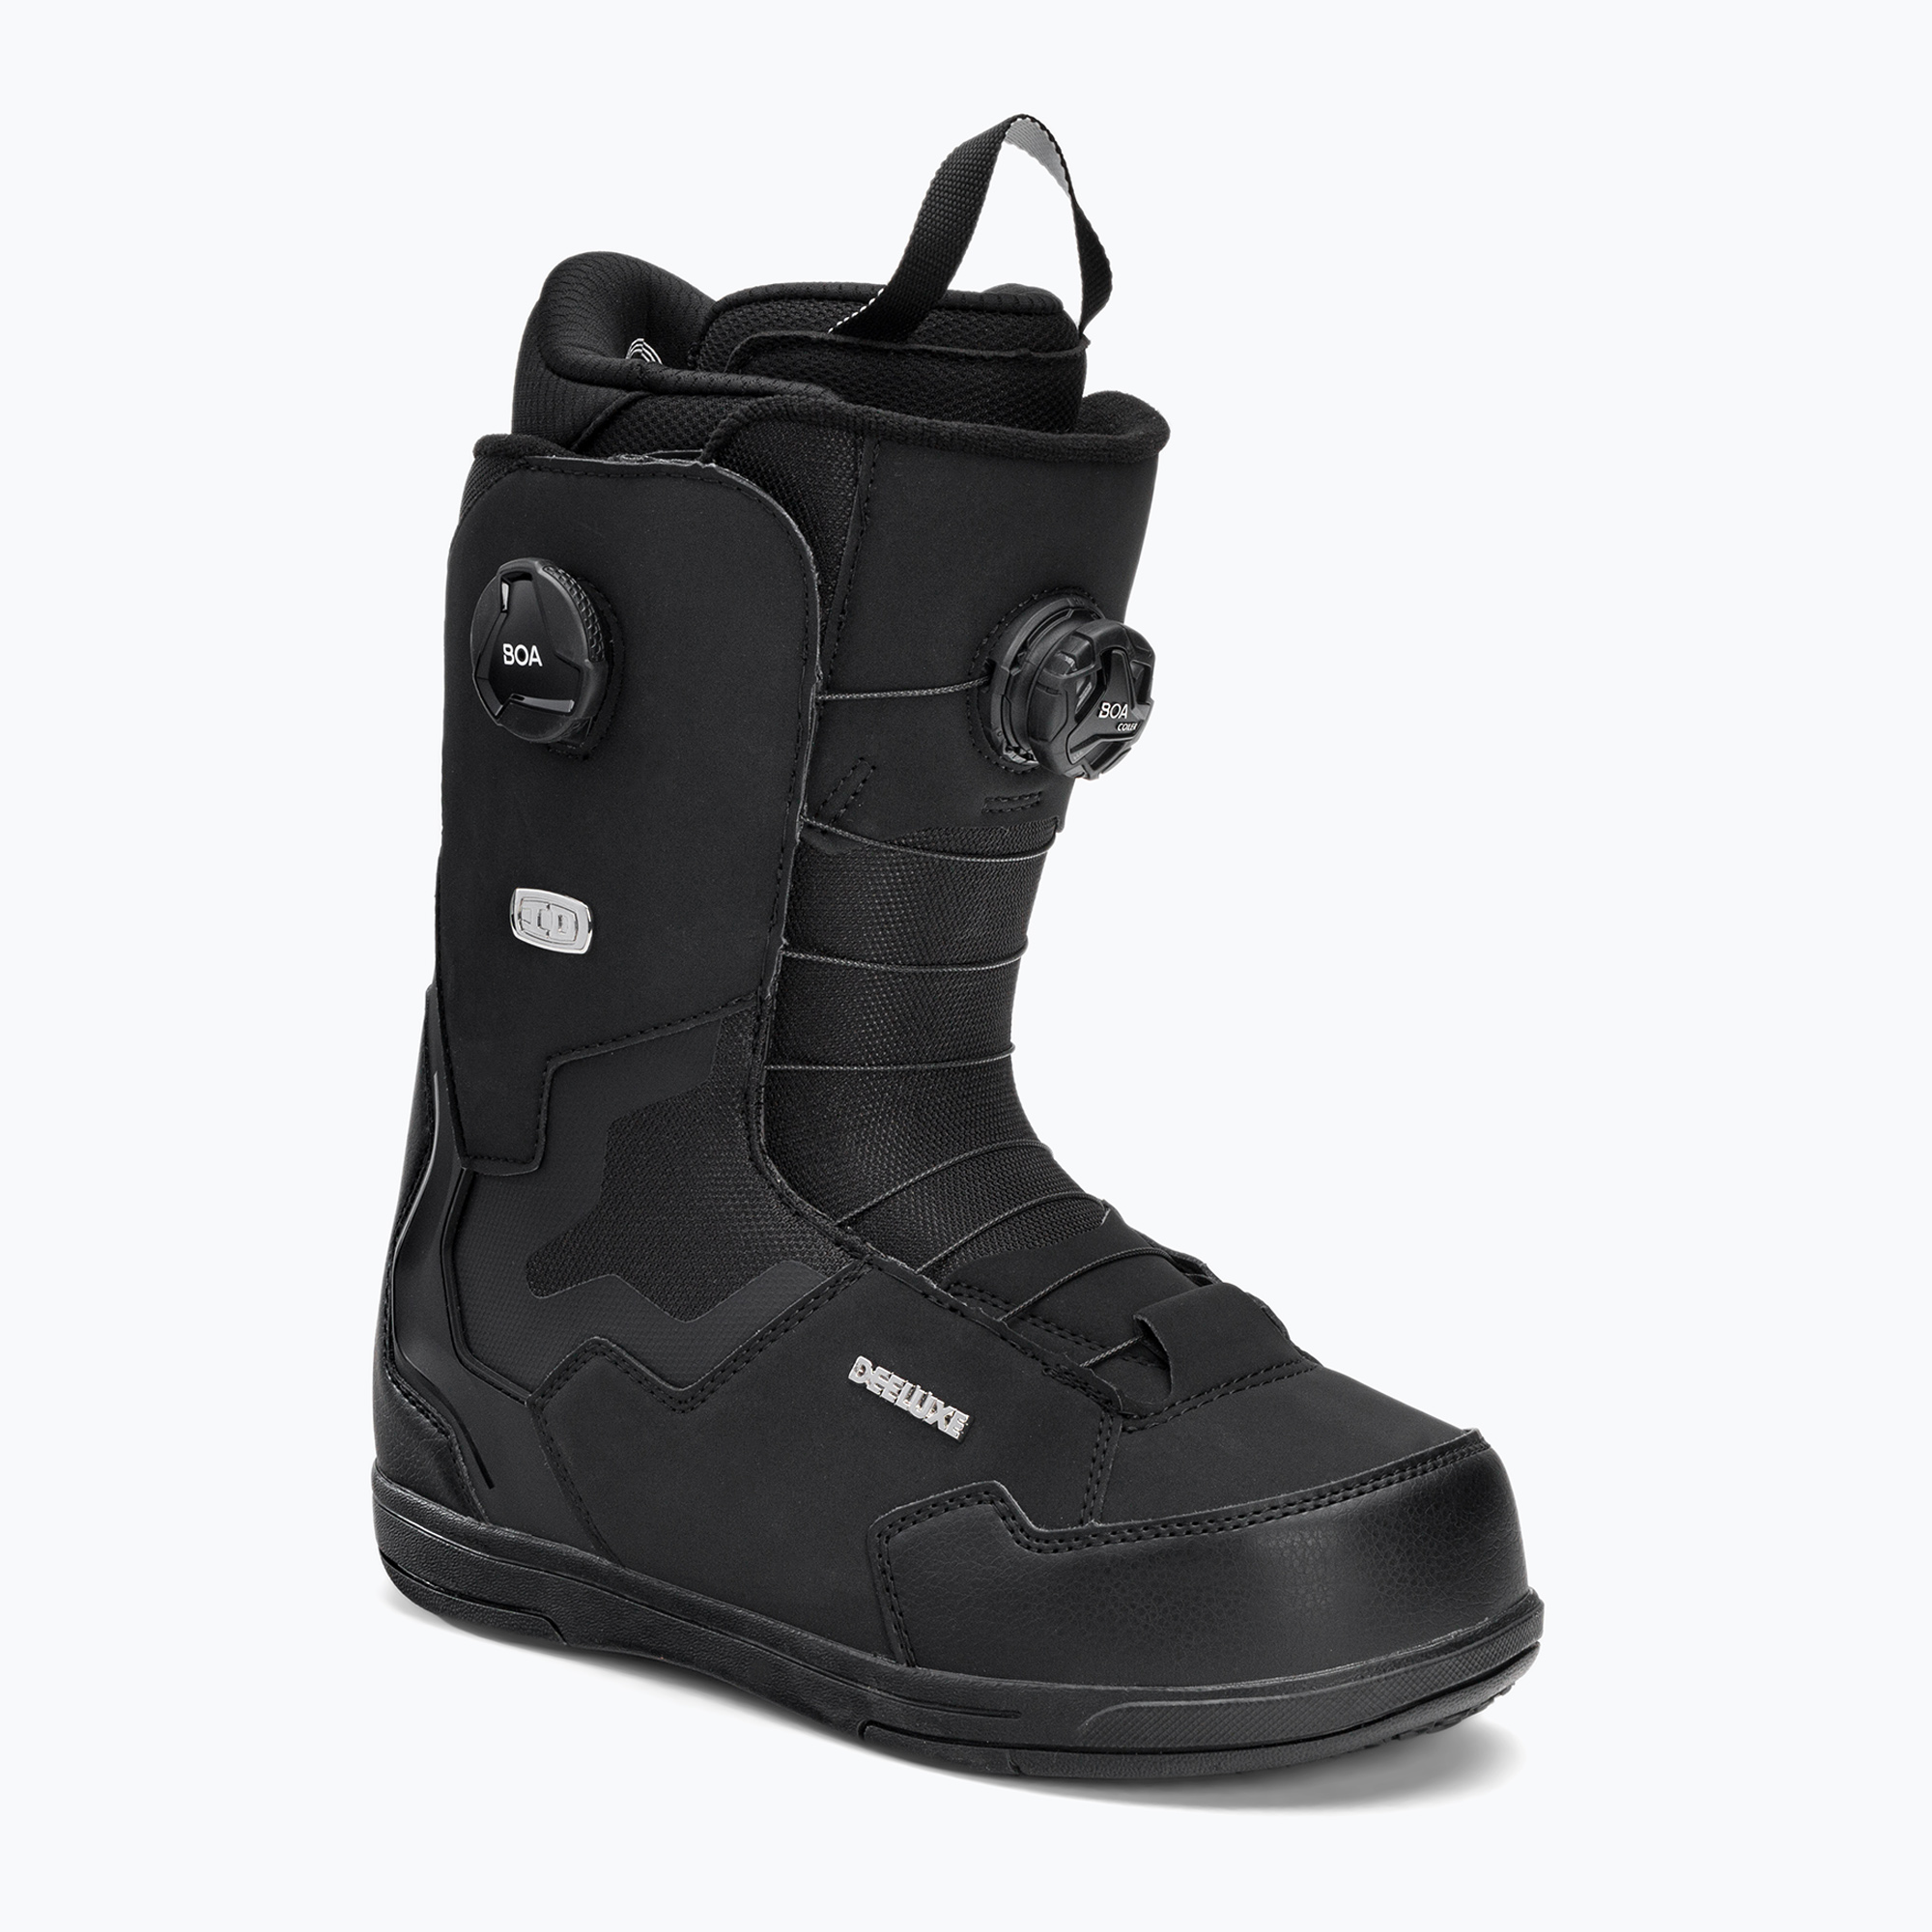 Snowboardové topánky DEELUXE ID Dual Boa black 572115-1000/9110